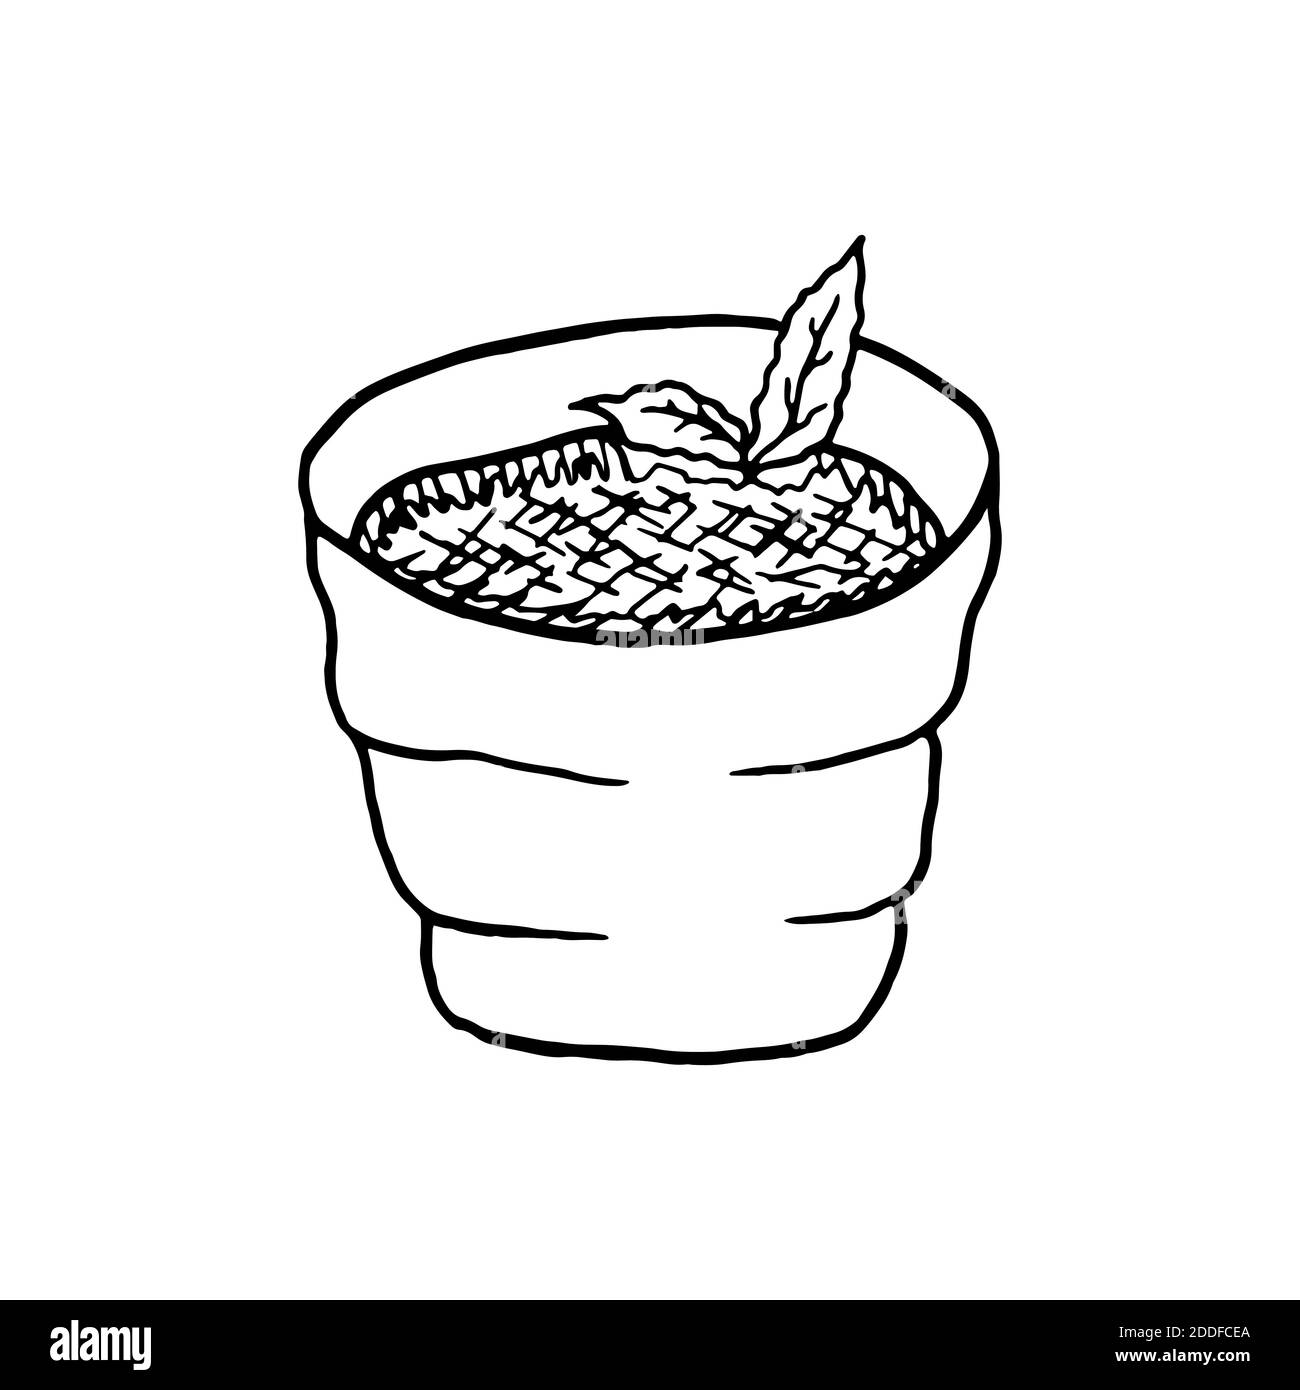 Vektor handgezeichnete Creme Brulee. Dessert der französischen Küche. Design Skizzenelement für Menü Café, Bistro, Restaurant, Bäckerei, Etikett und Verpackung. Illustra Stock Vektor